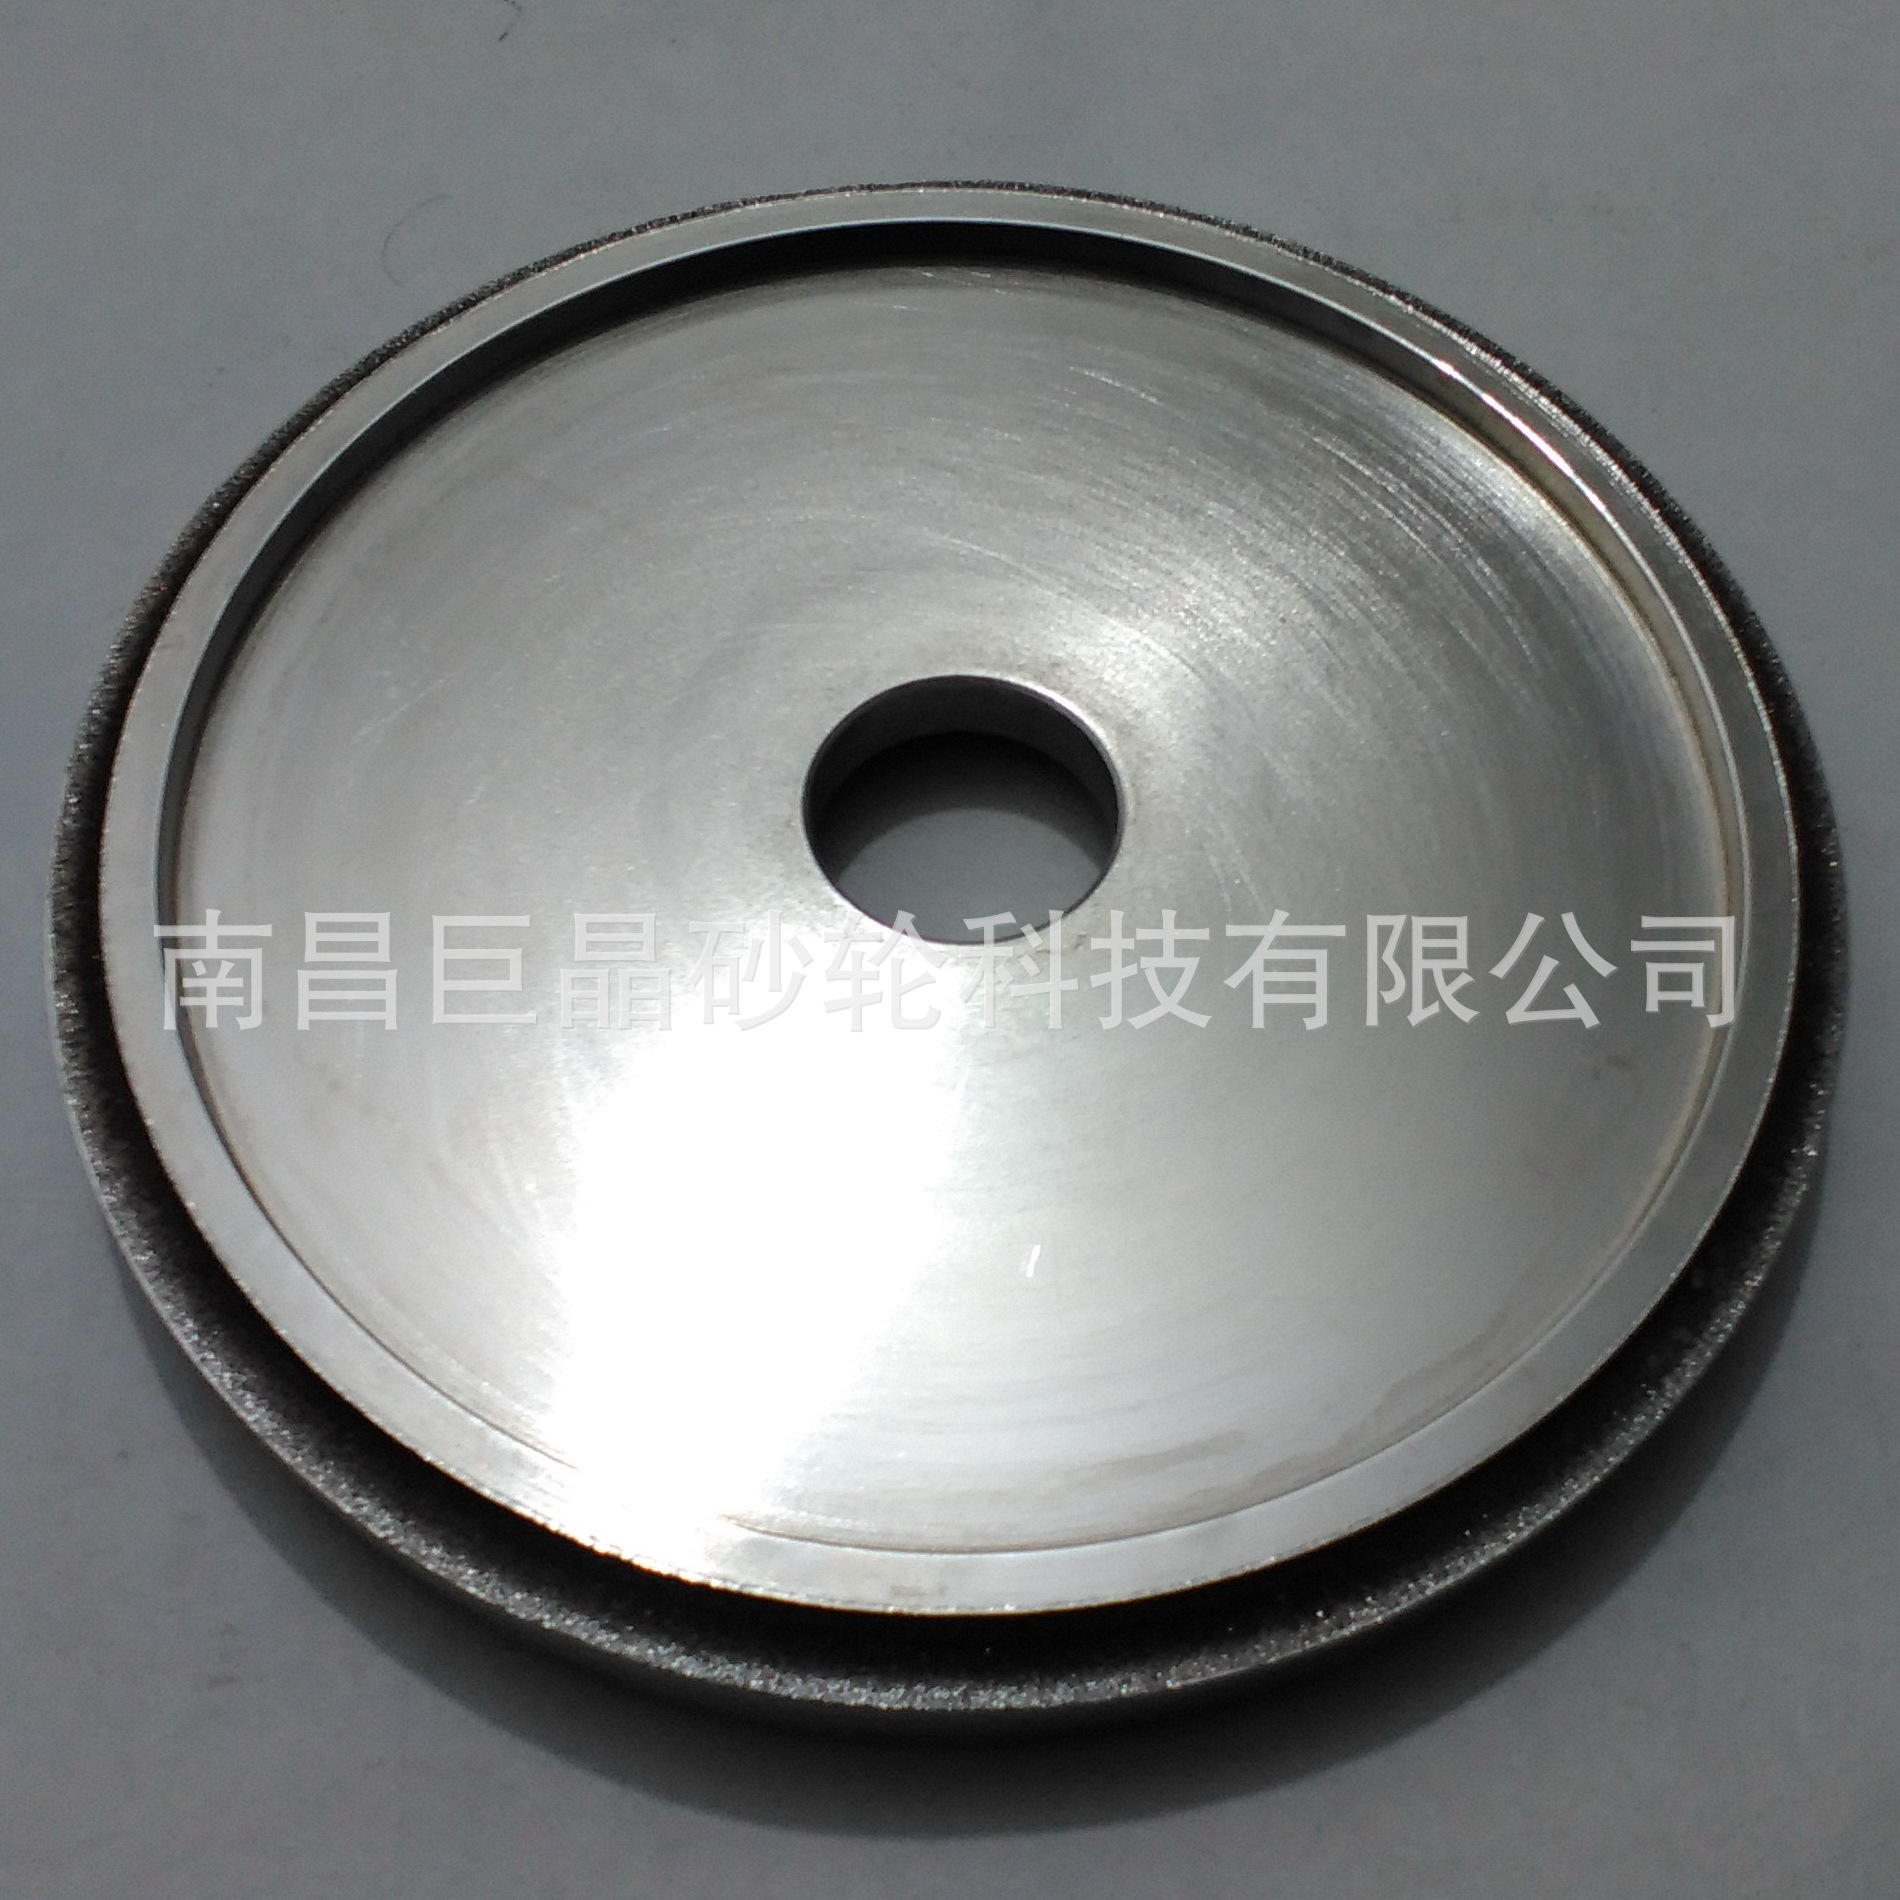 专业生产 高效耐磨 巨晶牌电镀CBN平形砂轮 磨五金工具圆弧砂轮